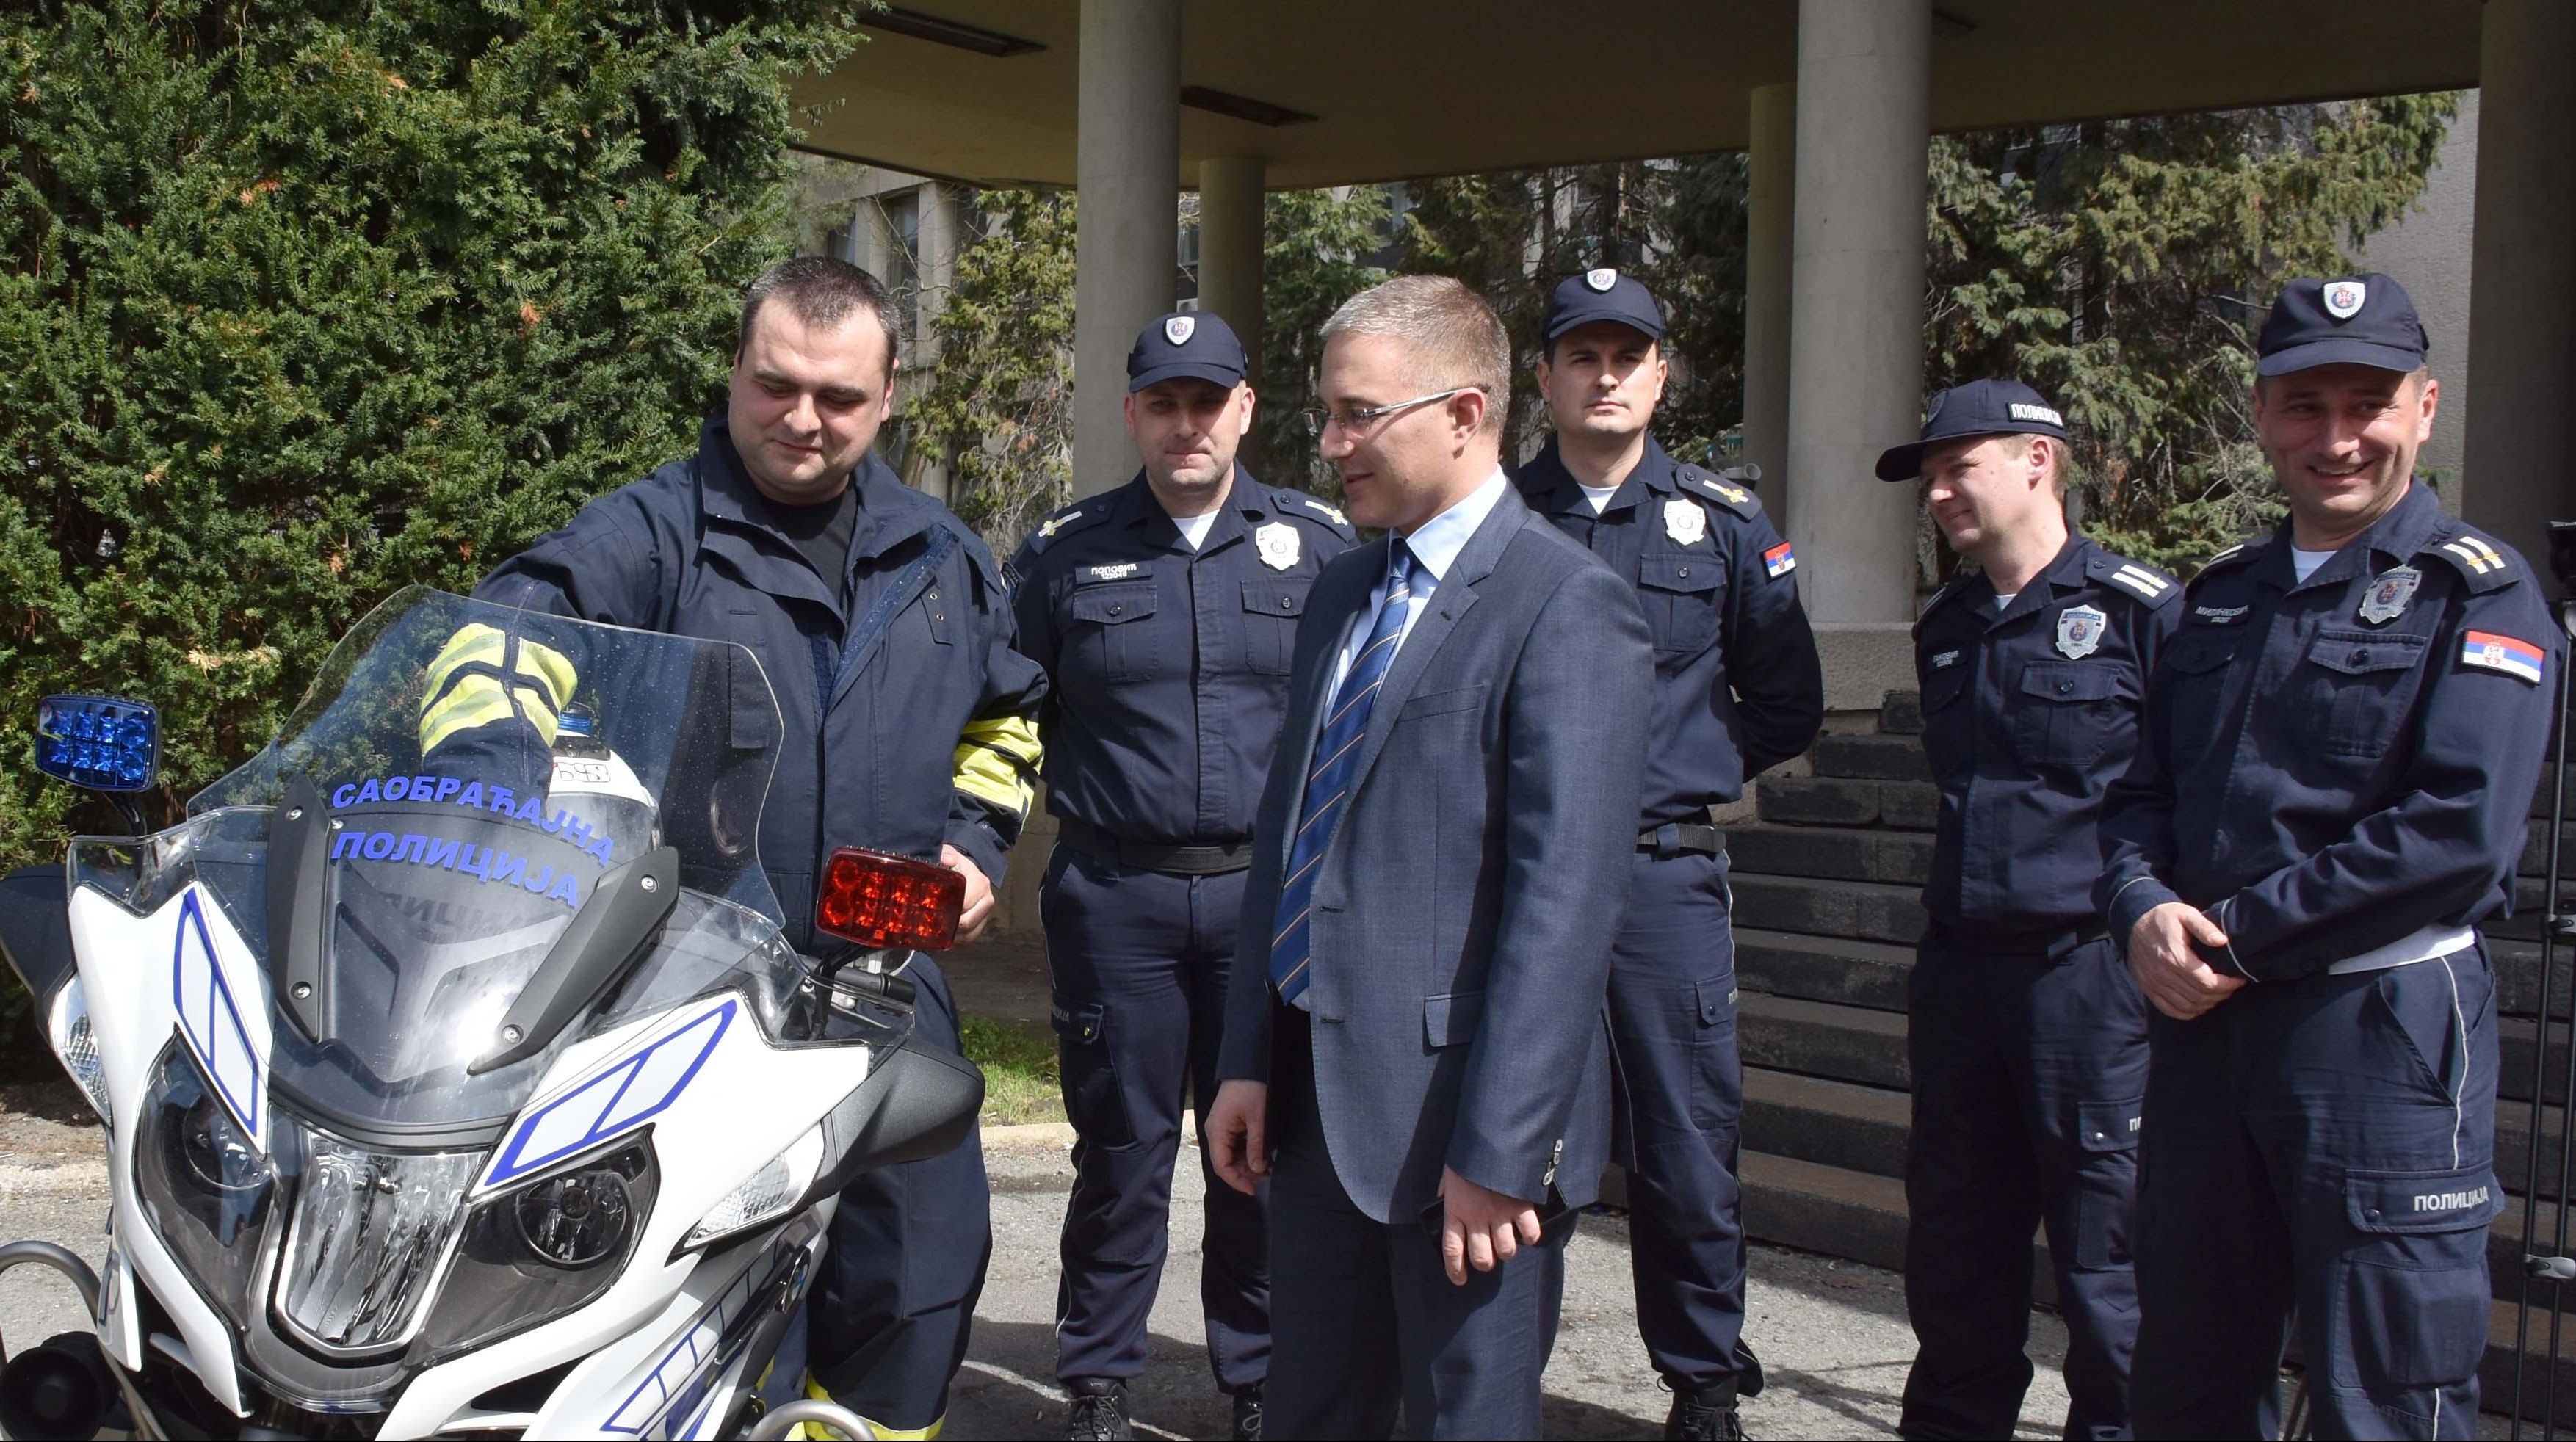 (FOTO) EFIKASNA KONTROLA SAOBRAĆAJA! Stefanović uručio Upravi saobraćajne policije 20 novih patrolnih motocikala! 